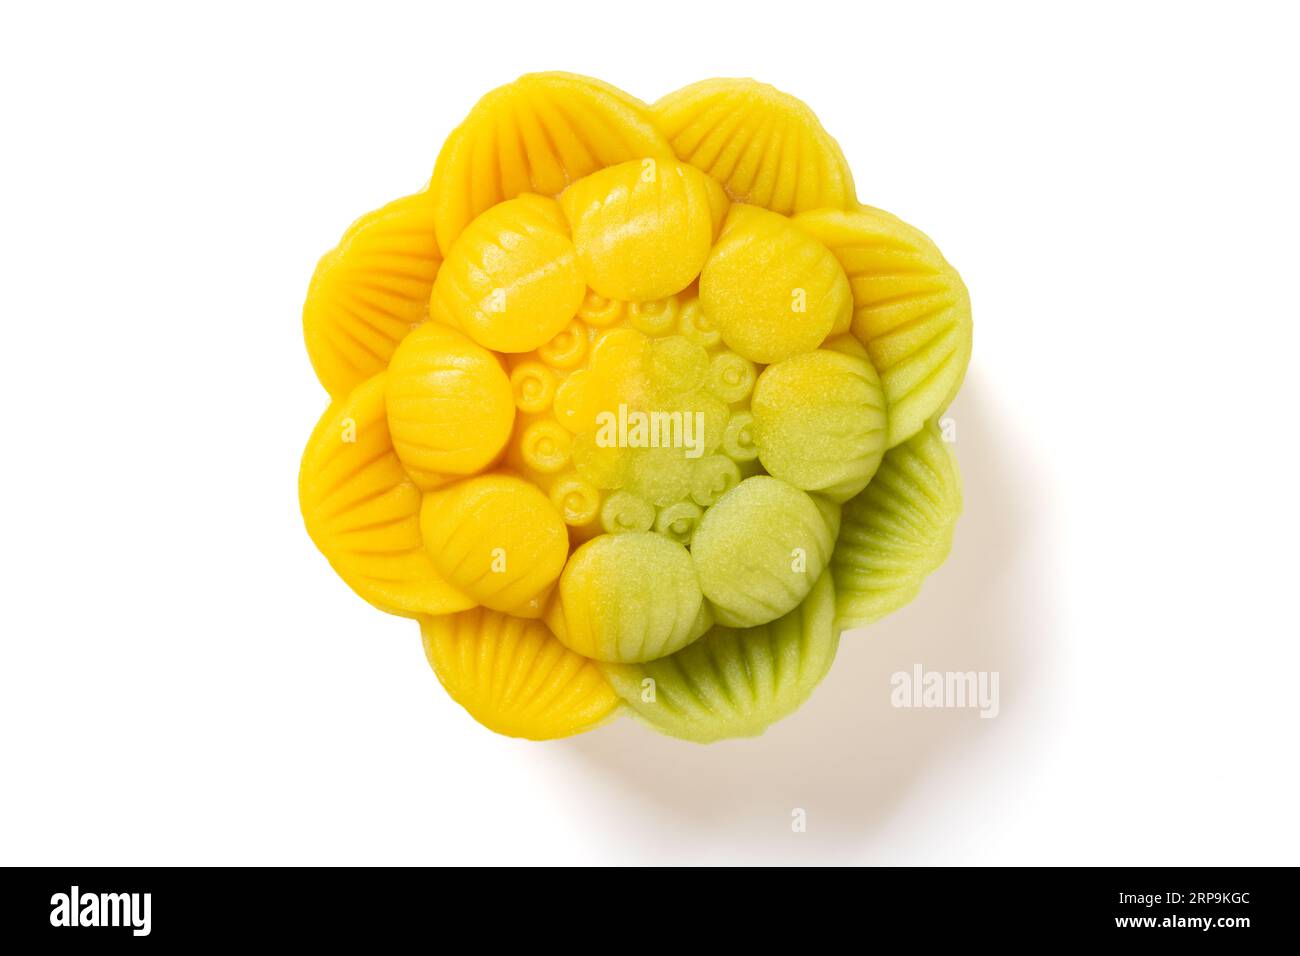 vista dall'alto elegante e bellissima torta luna dai colori giallo e verde a forma di fiore su sfondo bianco Foto Stock